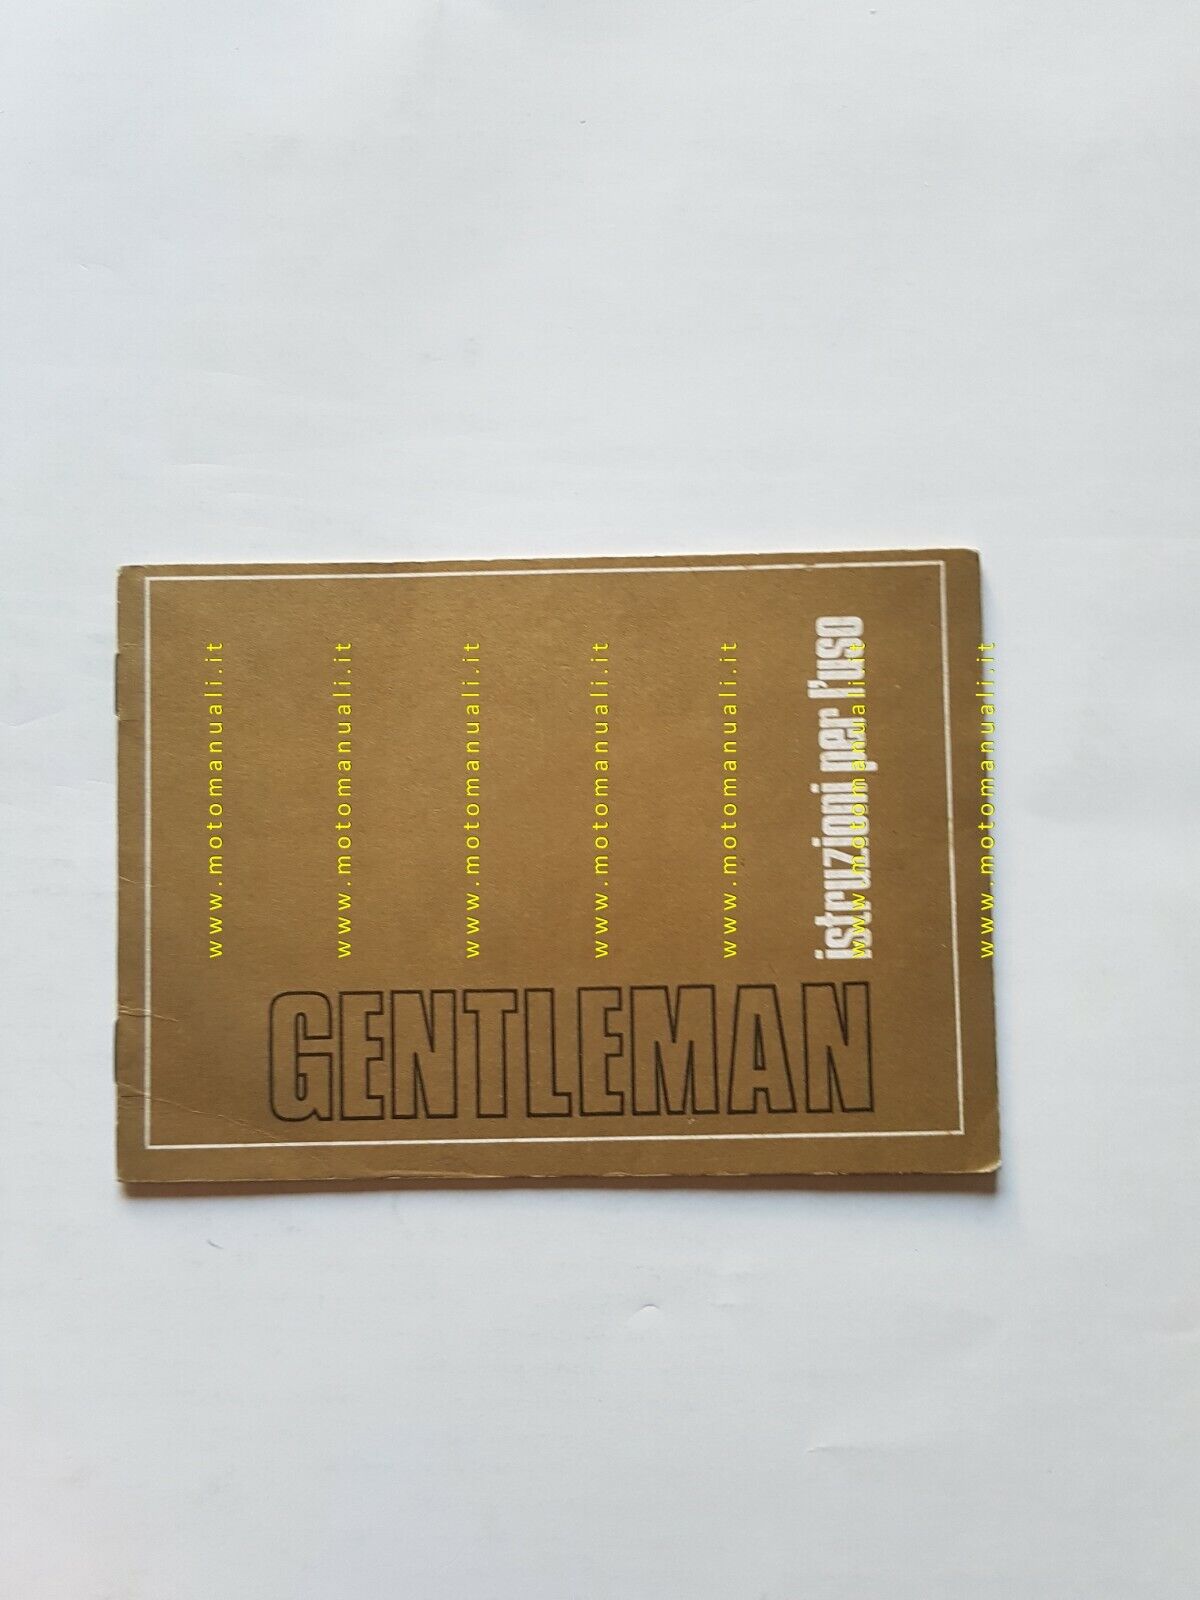 Benelli 50 Gentleman 1975 manuale uso libretto originale owner's manual